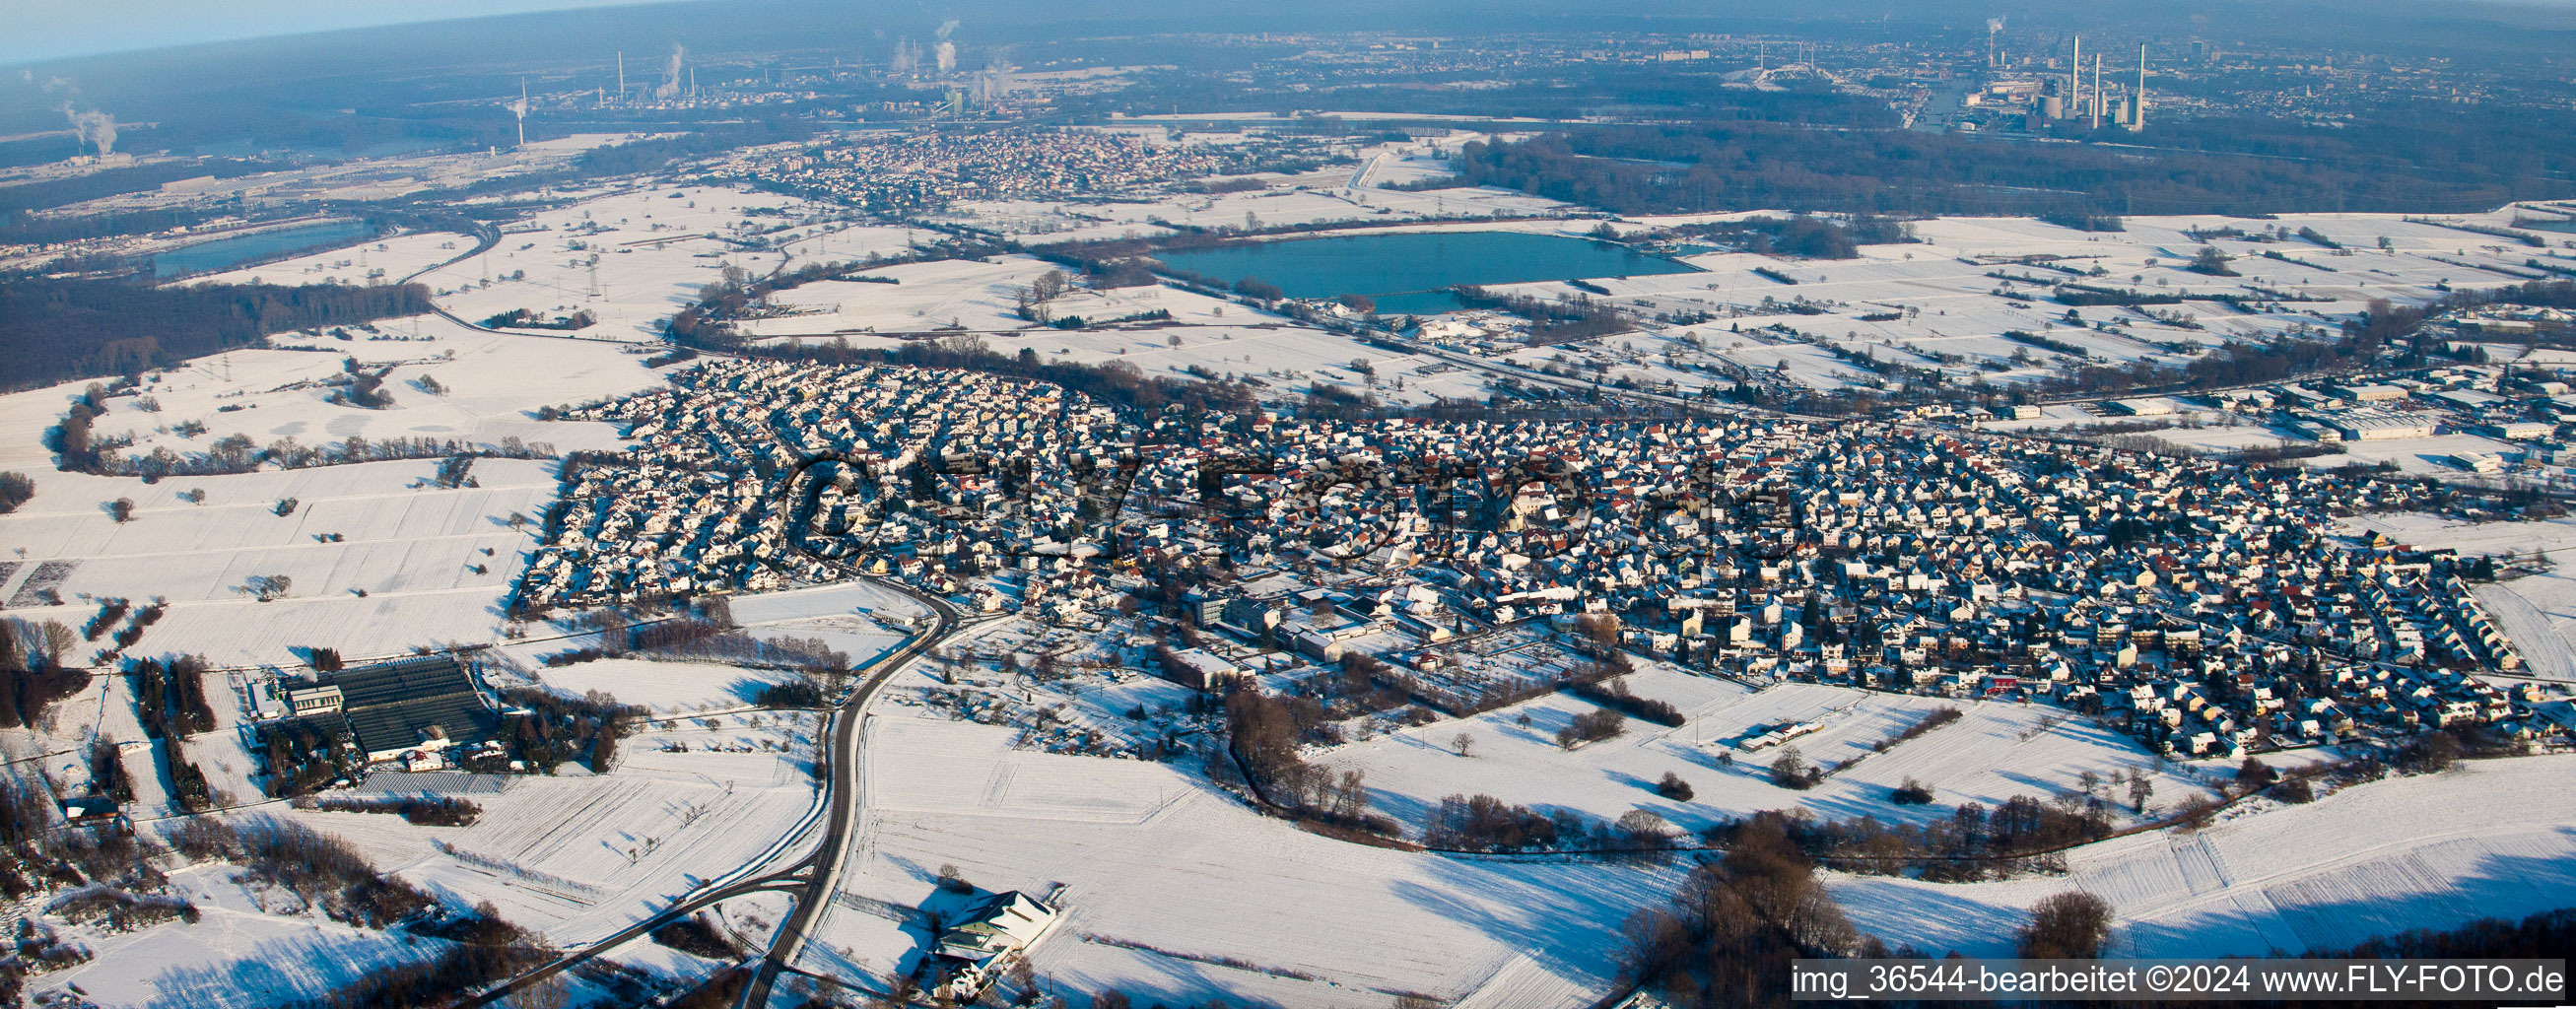 Vue aérienne de Panorama enneigé d'hiver - vue locale en perspective des rues et des maisons des quartiers résidentiels à Hagenbach dans le département Rhénanie-Palatinat, Allemagne